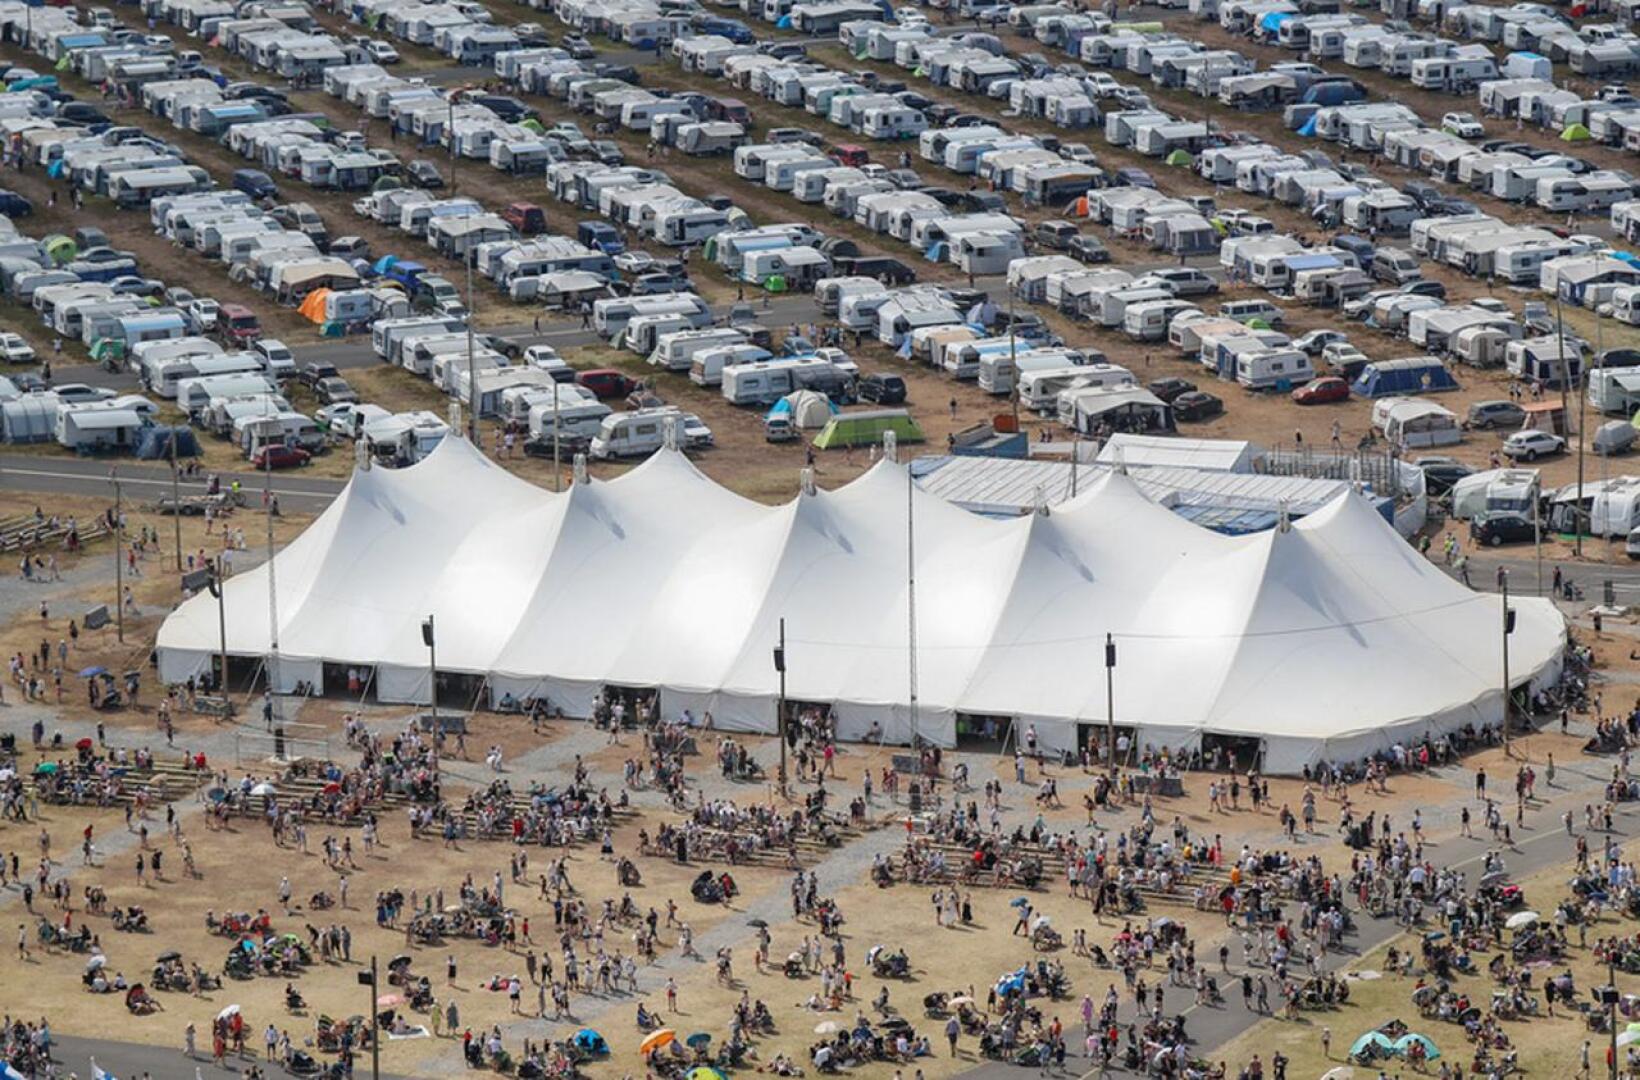 Suviseuroilla leiriydytään perinteisesti matkailuautoihin, -vaunuihin ja telttoihin. Niin on myös tänä vuonna, kahden etävuoden jälkeen.